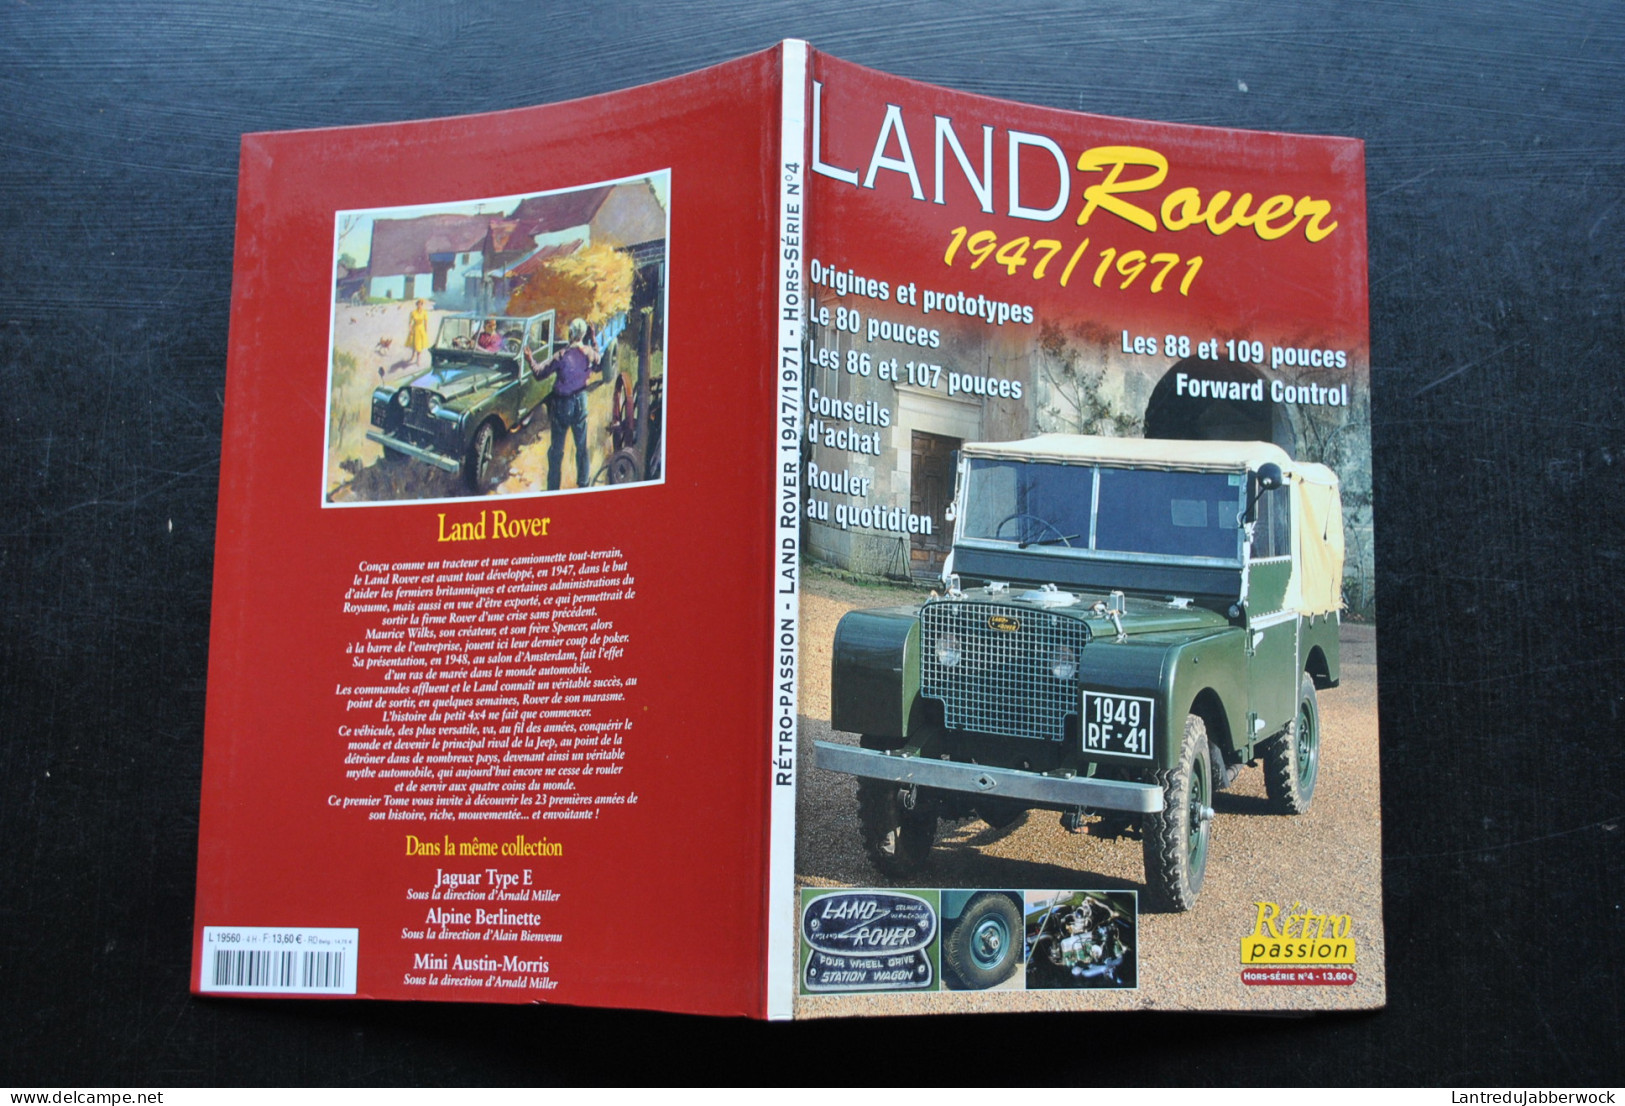 Land Rover 1947 1971 Origines & Prototypes 80 Pouces 86 107 88 109 Conseils D'achat Forward Control Rétro Passion N°4 HS - Auto